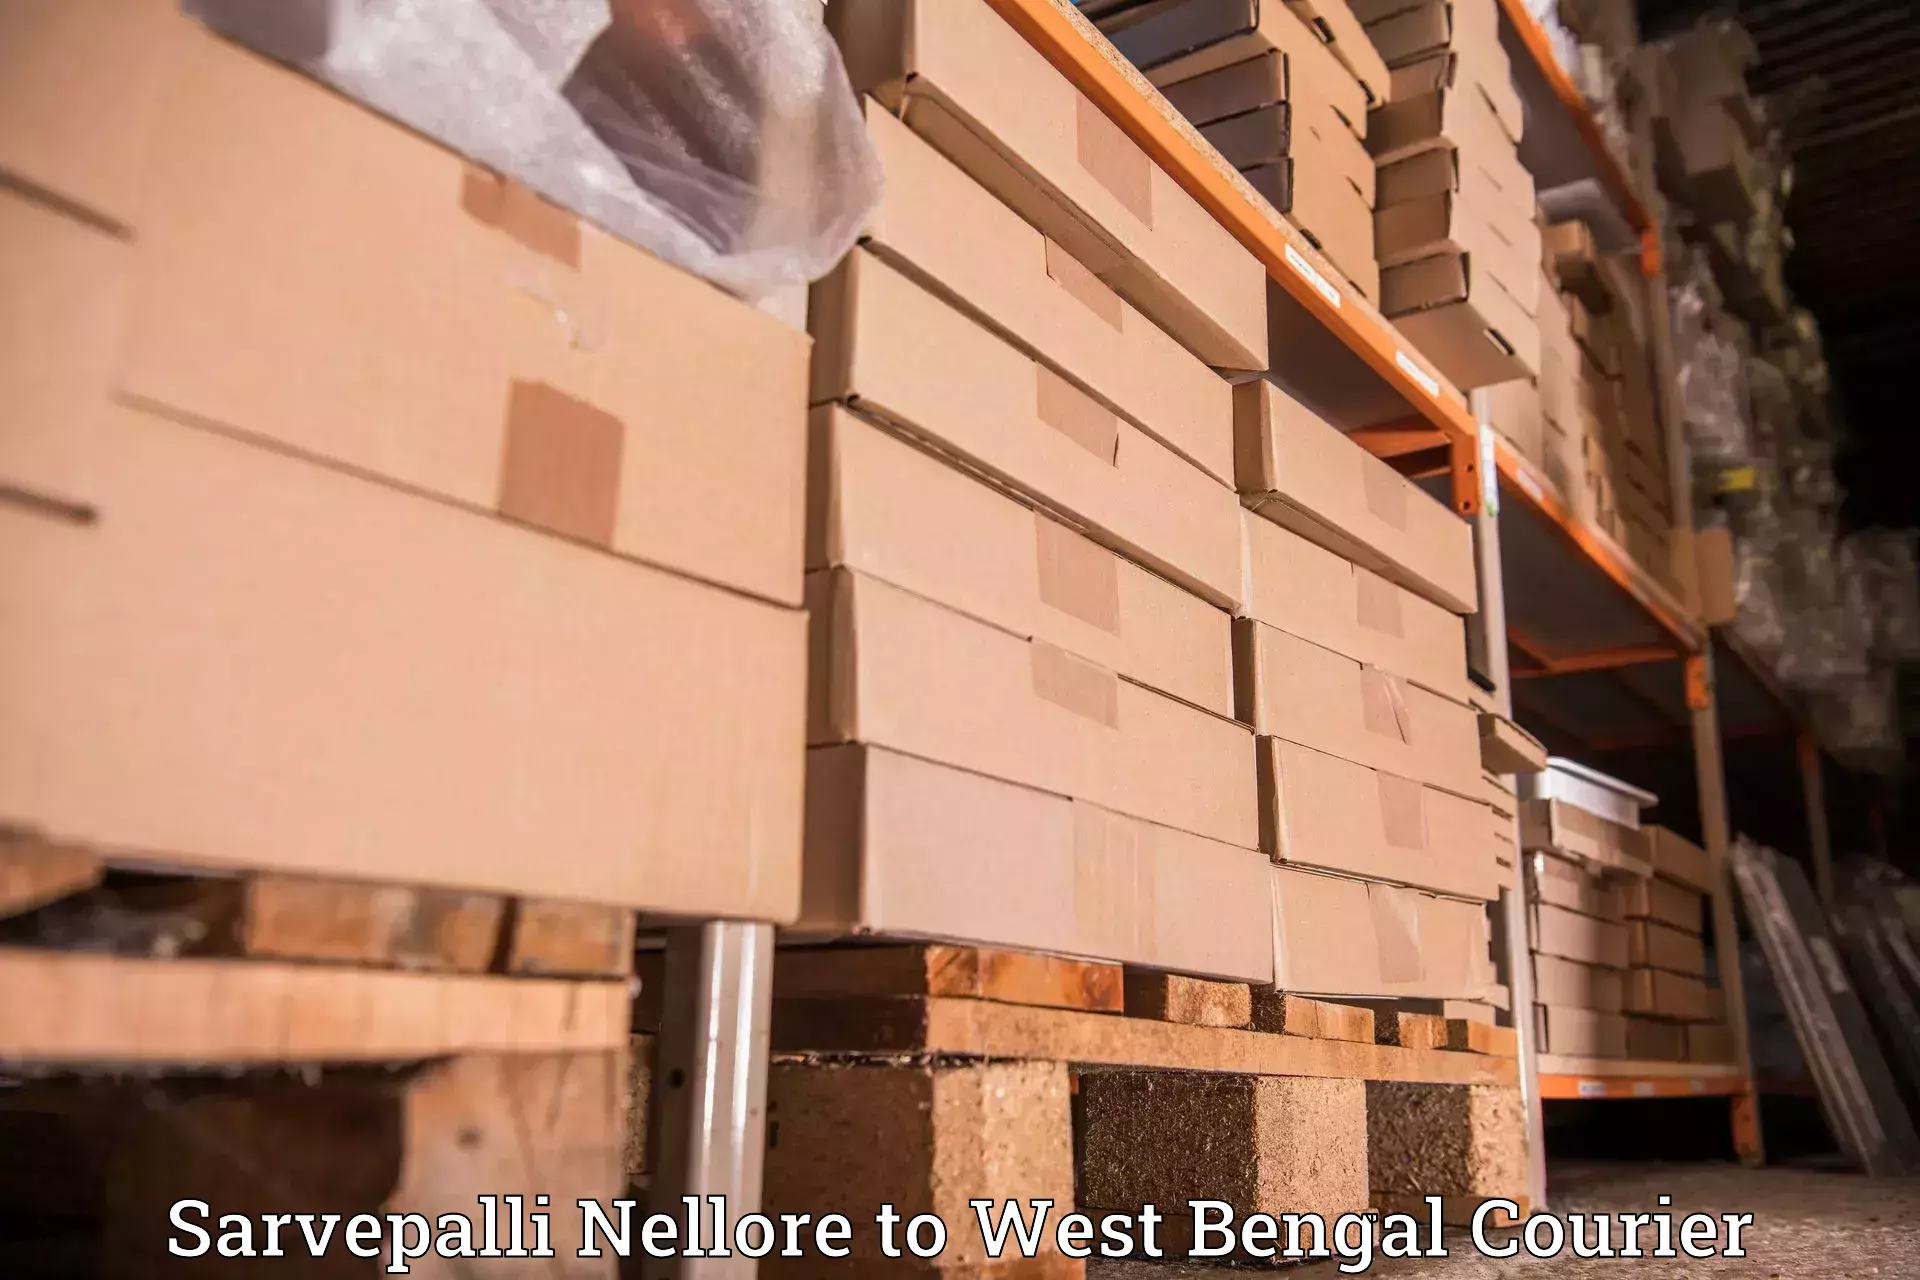 Courier service innovation Sarvepalli Nellore to Jamalpur